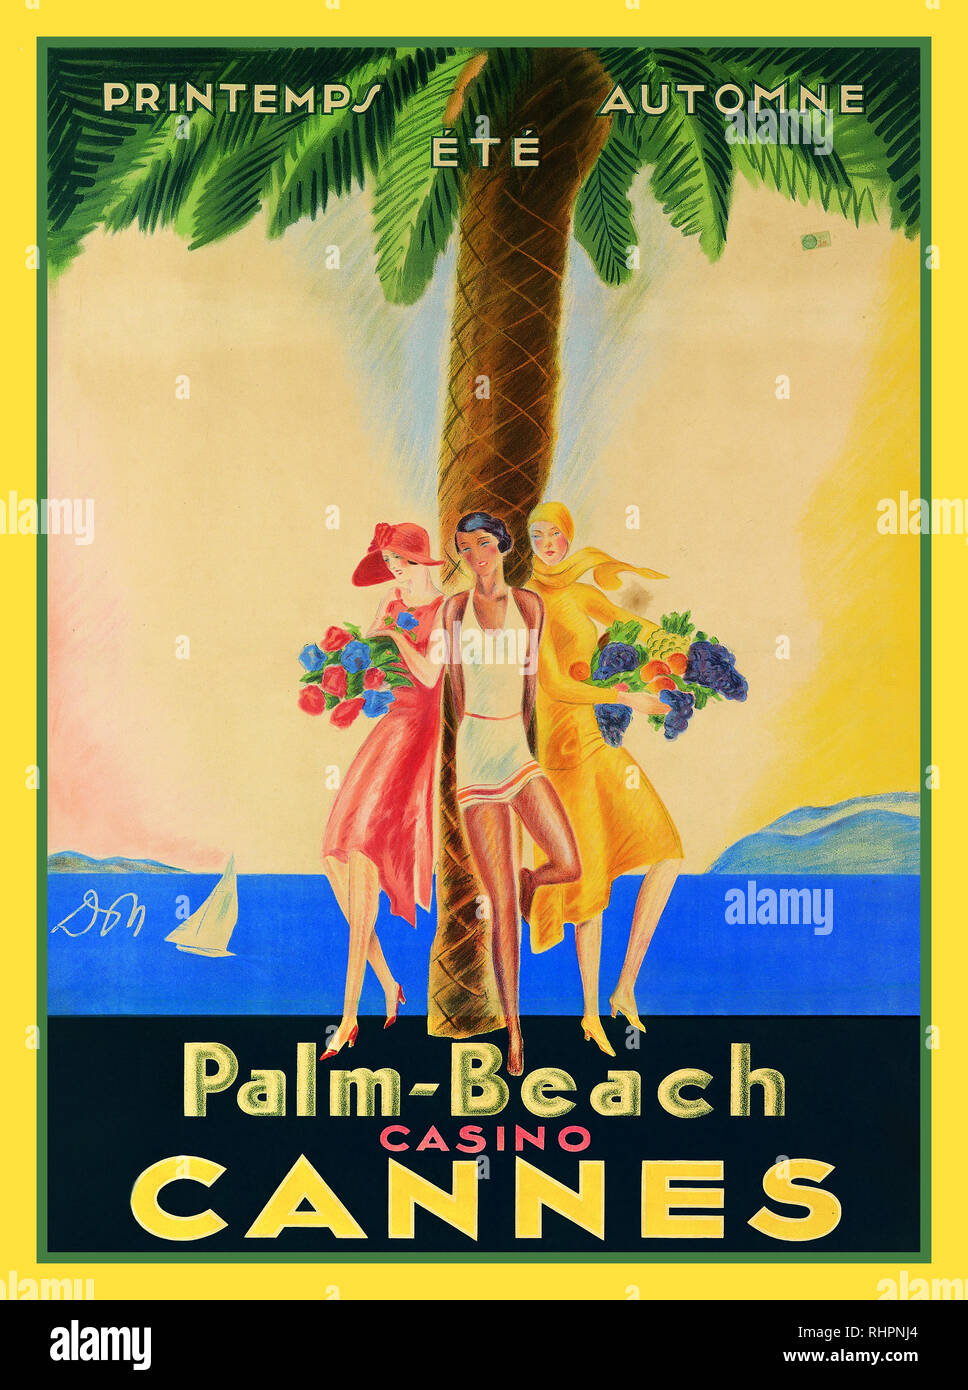 Vintage Travel Art Deco 20er Poster Palm Beach Casino Cannes Cote d'Azur Frankreich Printemps Eté Automne Stockfoto